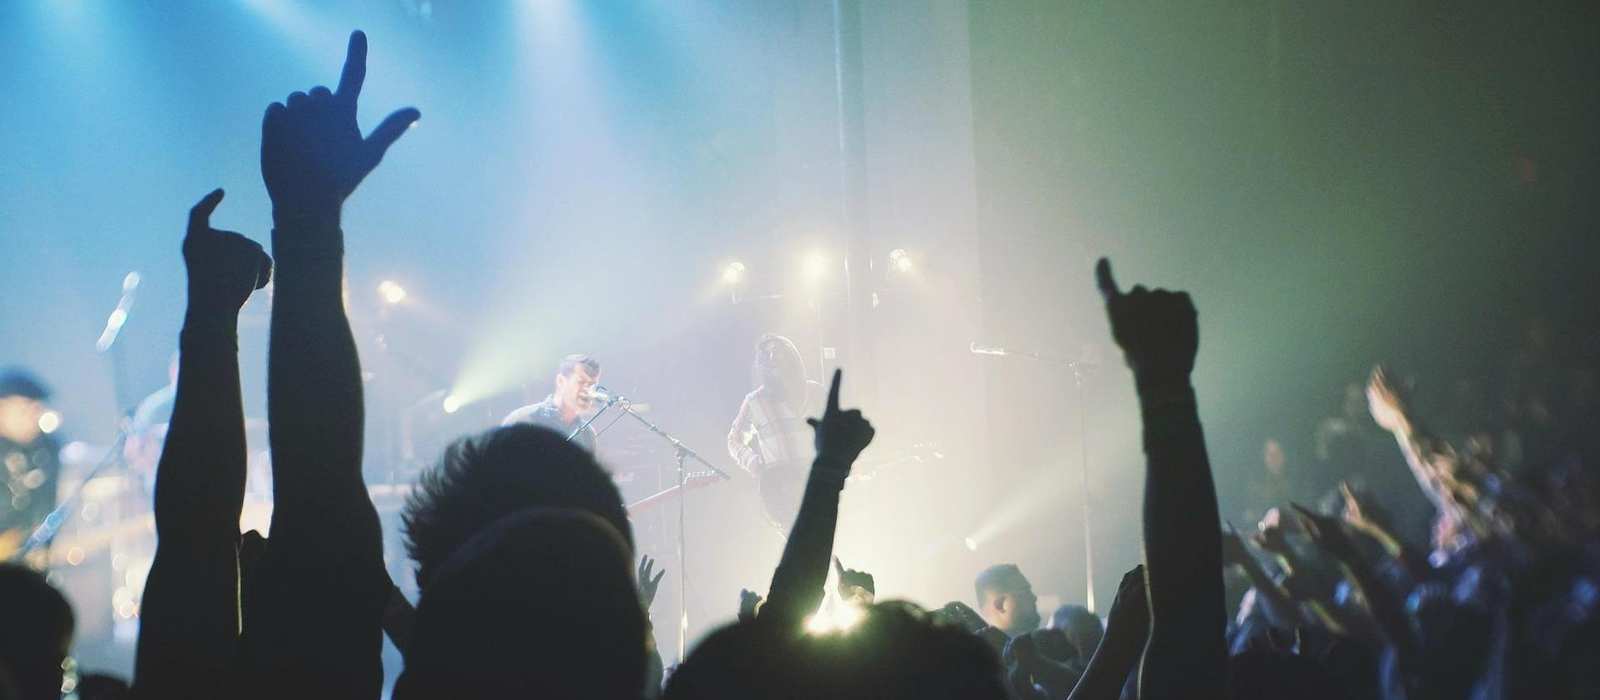 Ein Konzert einer Musikgruppe. Im Vordergrund sieht man die erhobenen Hände der Gäste. Im Hintergrund sieht man den Sänger und Gitarristen der Band.